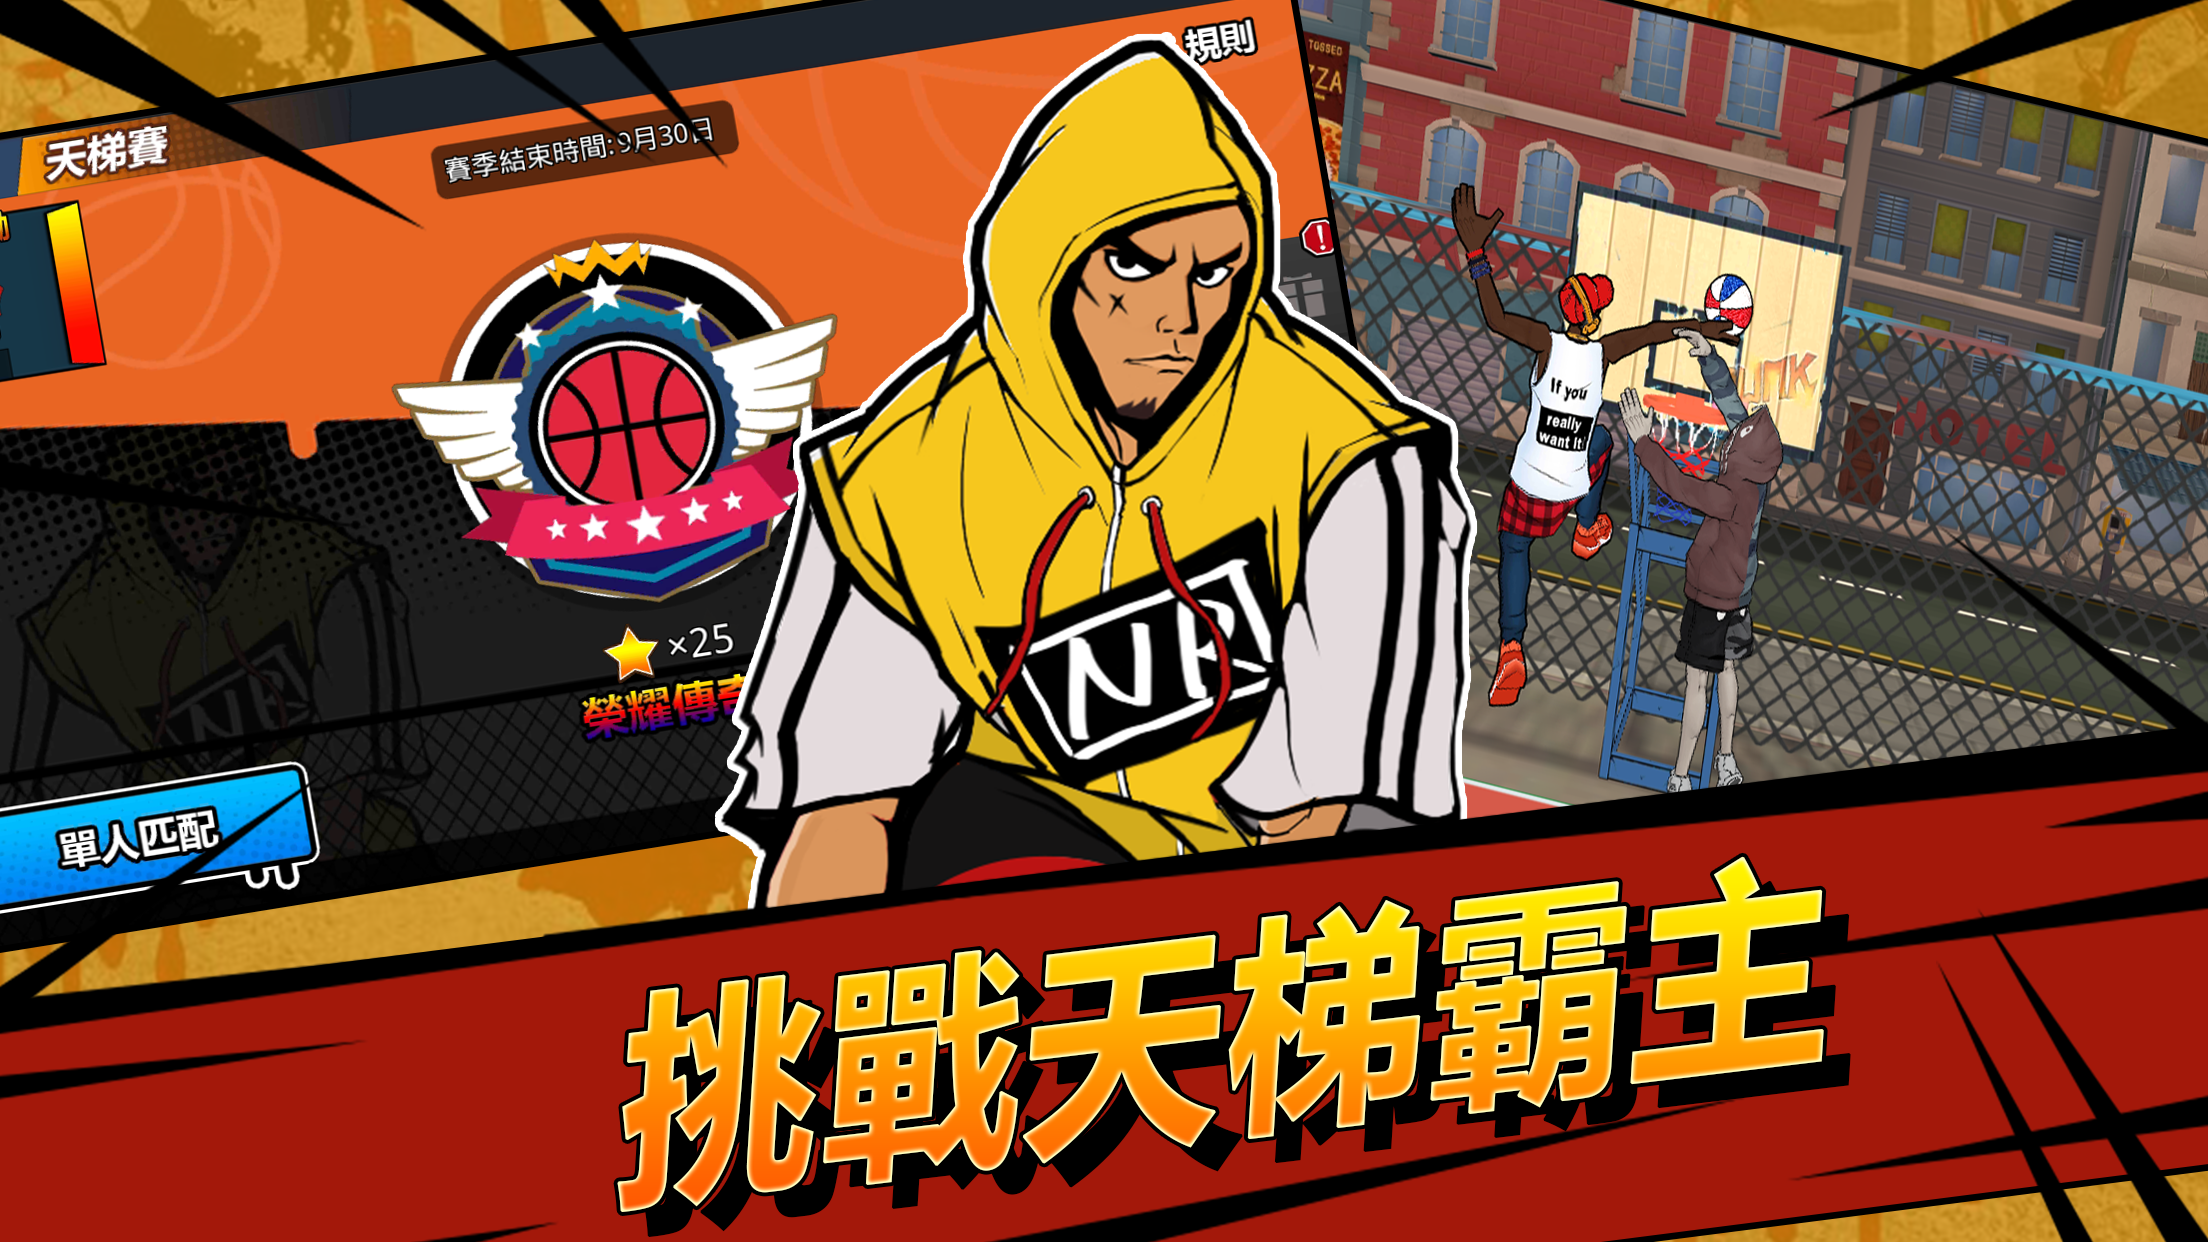 Screenshot 1 of Street Jam: игра 3 на 3 в прямом эфире против баскетбола 1.6.0.7